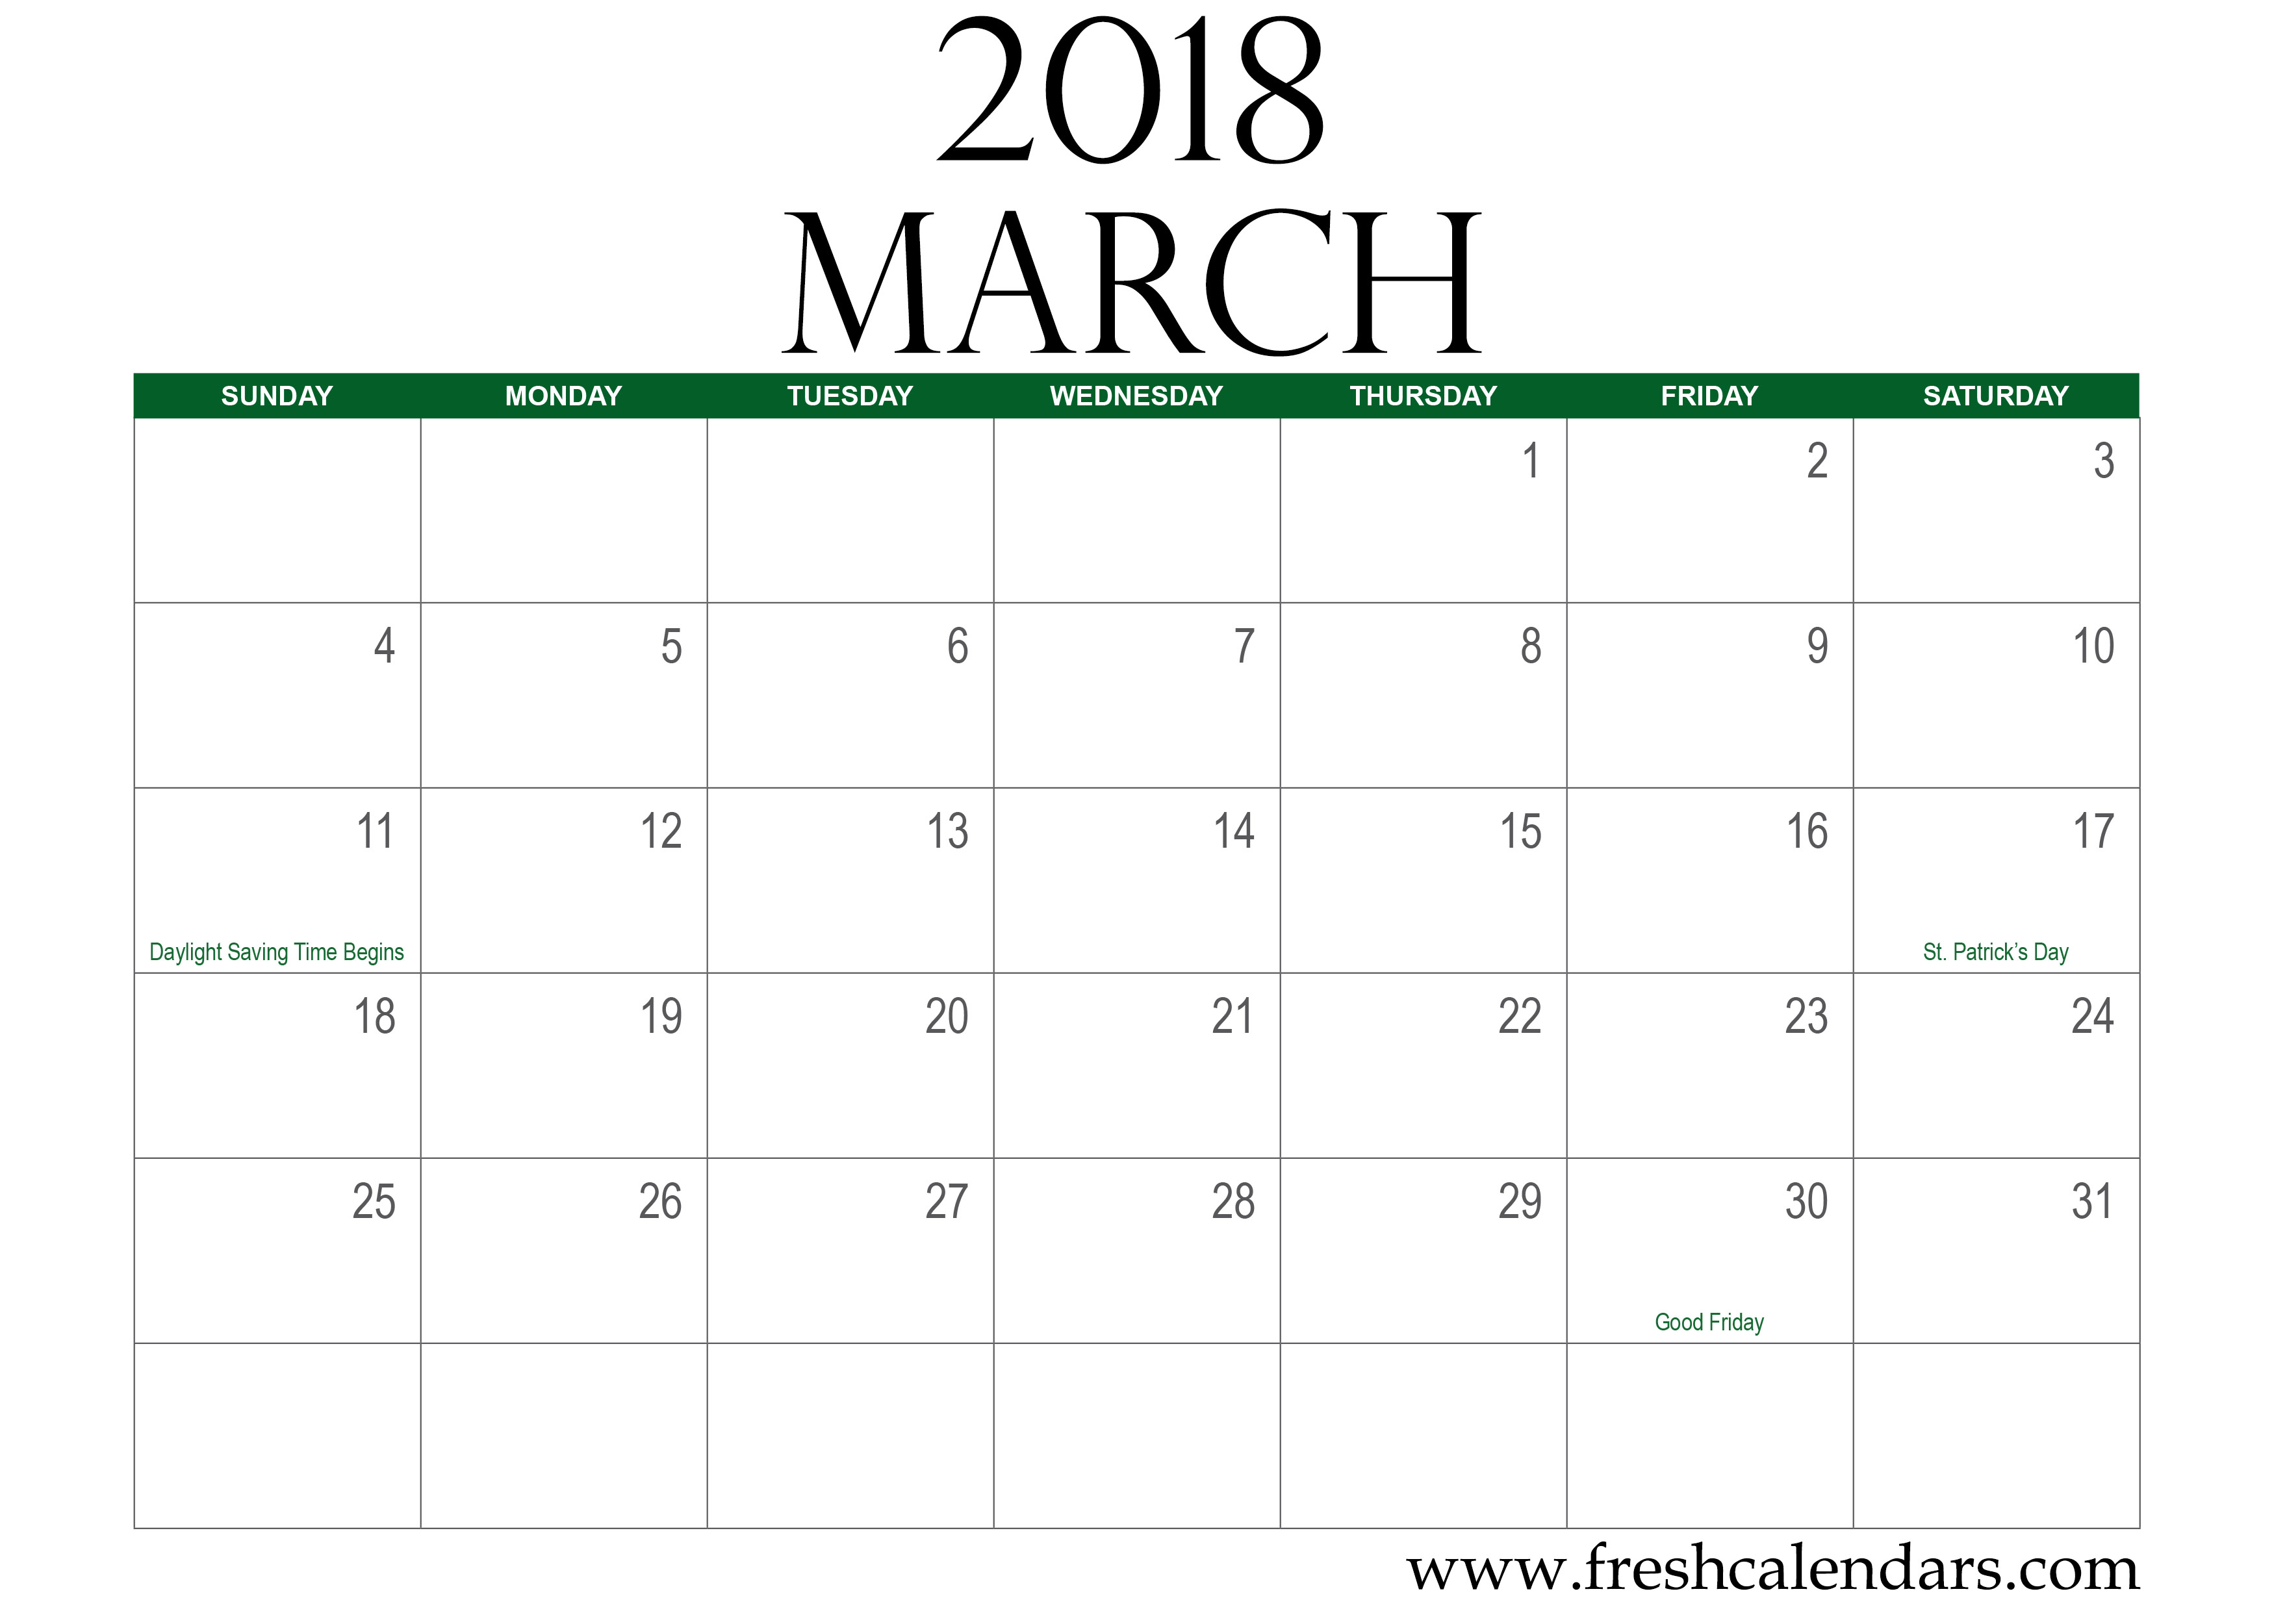 march-2018-calendar-printable